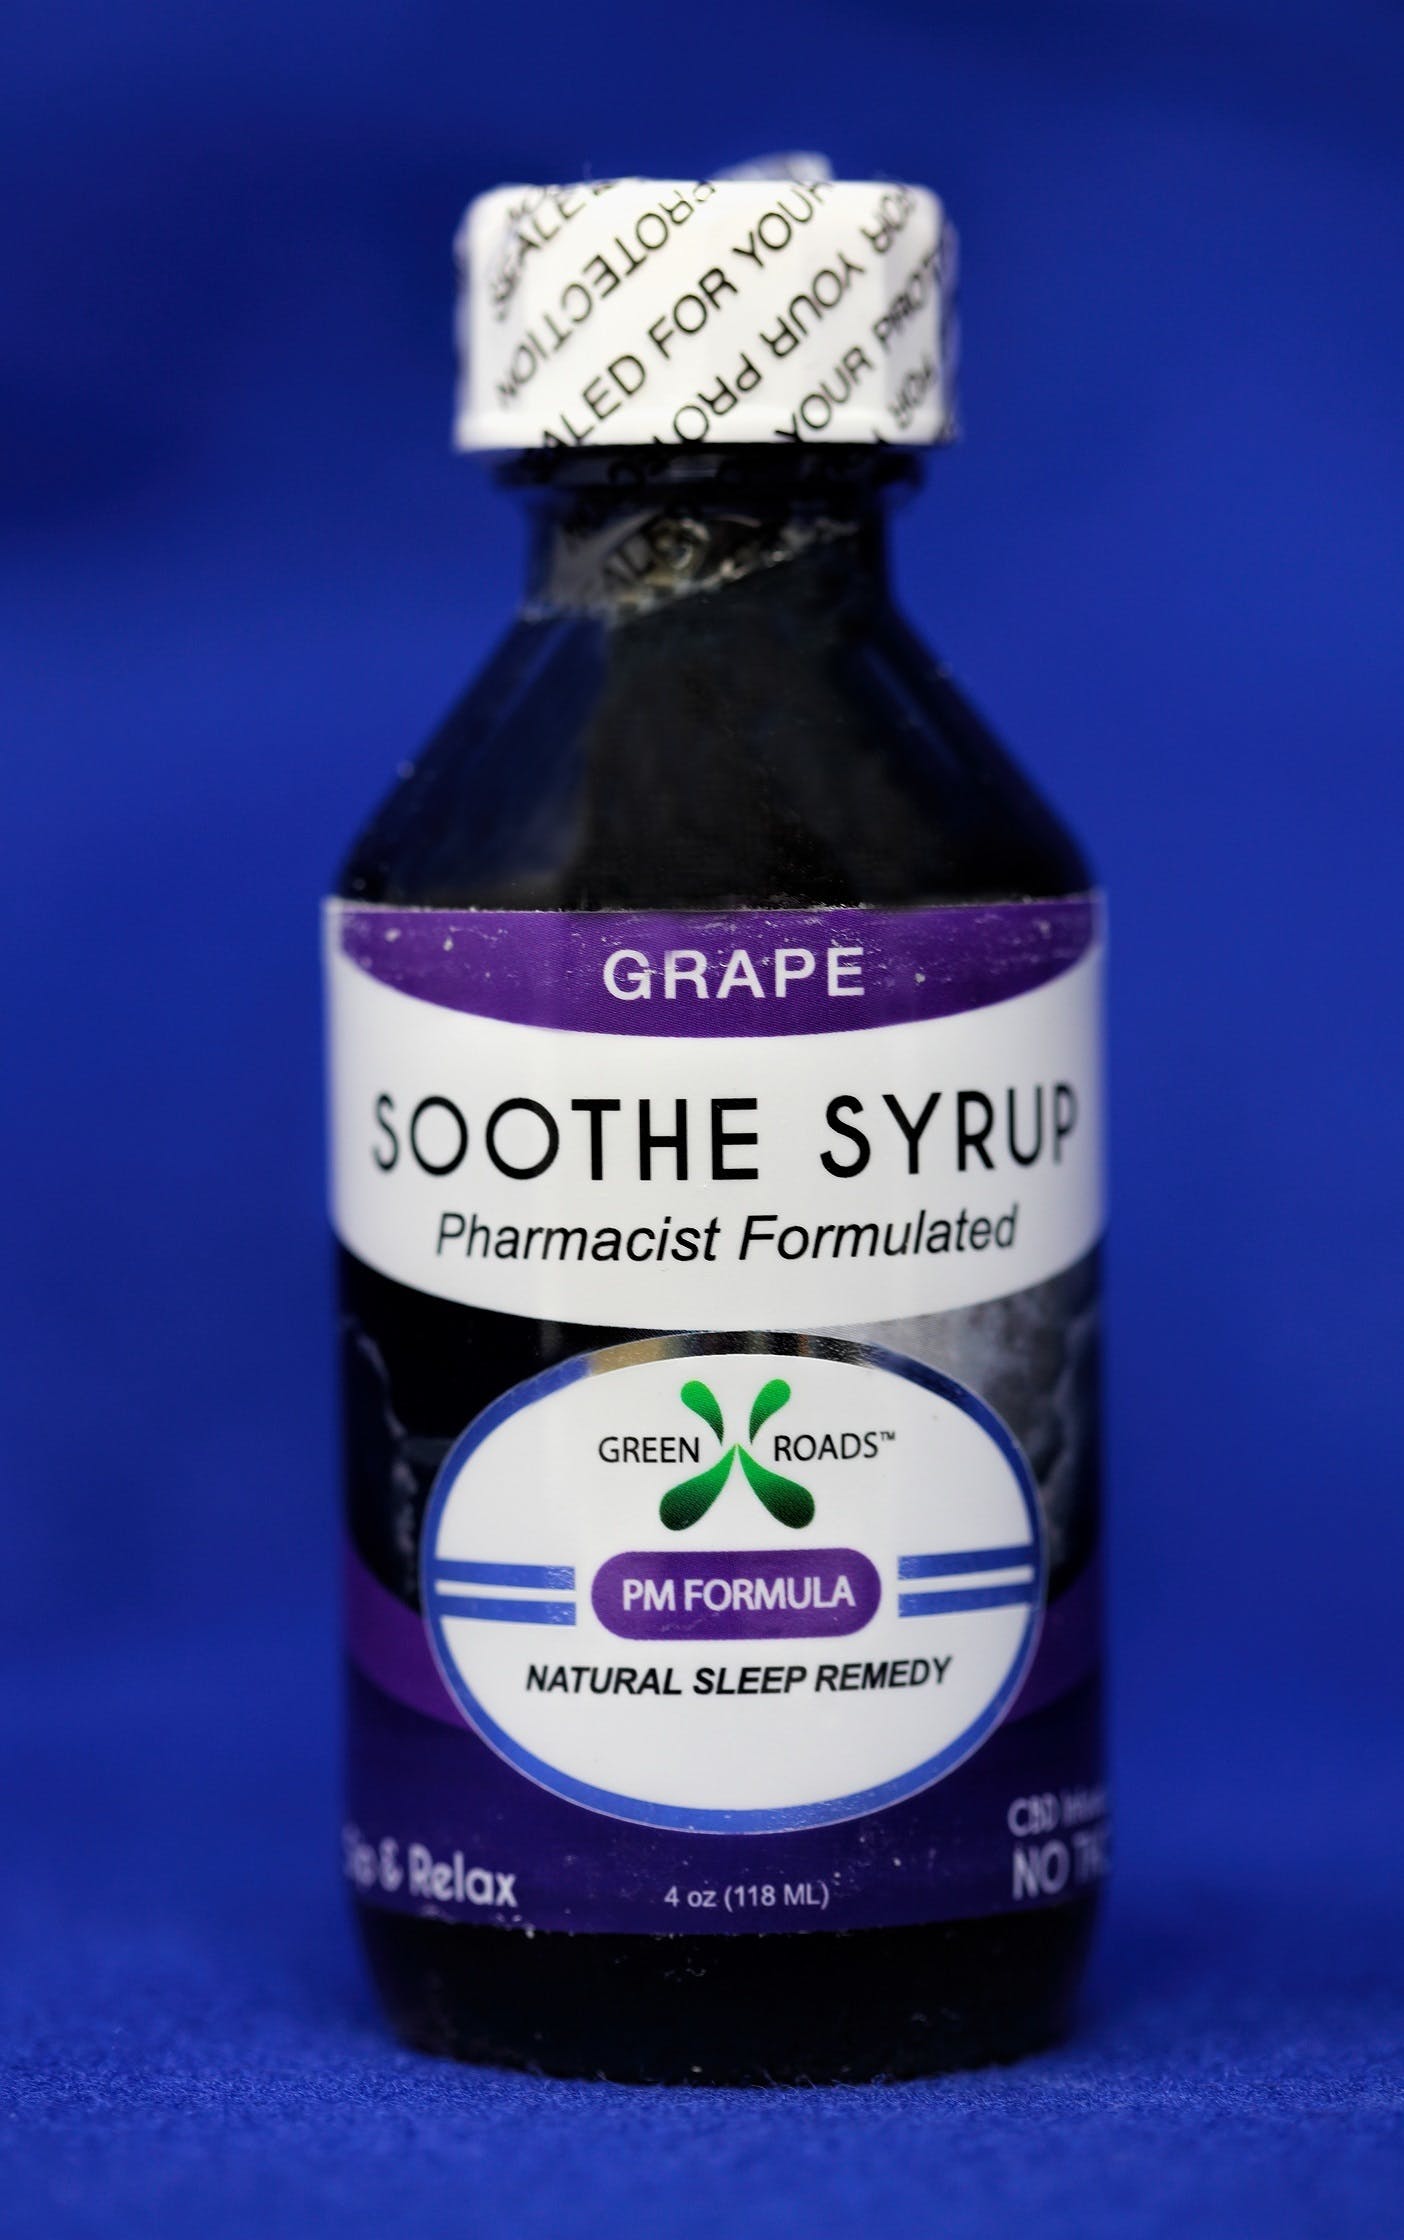 edible-60-mg-cbd-soothe-syrup-sleep-remedy